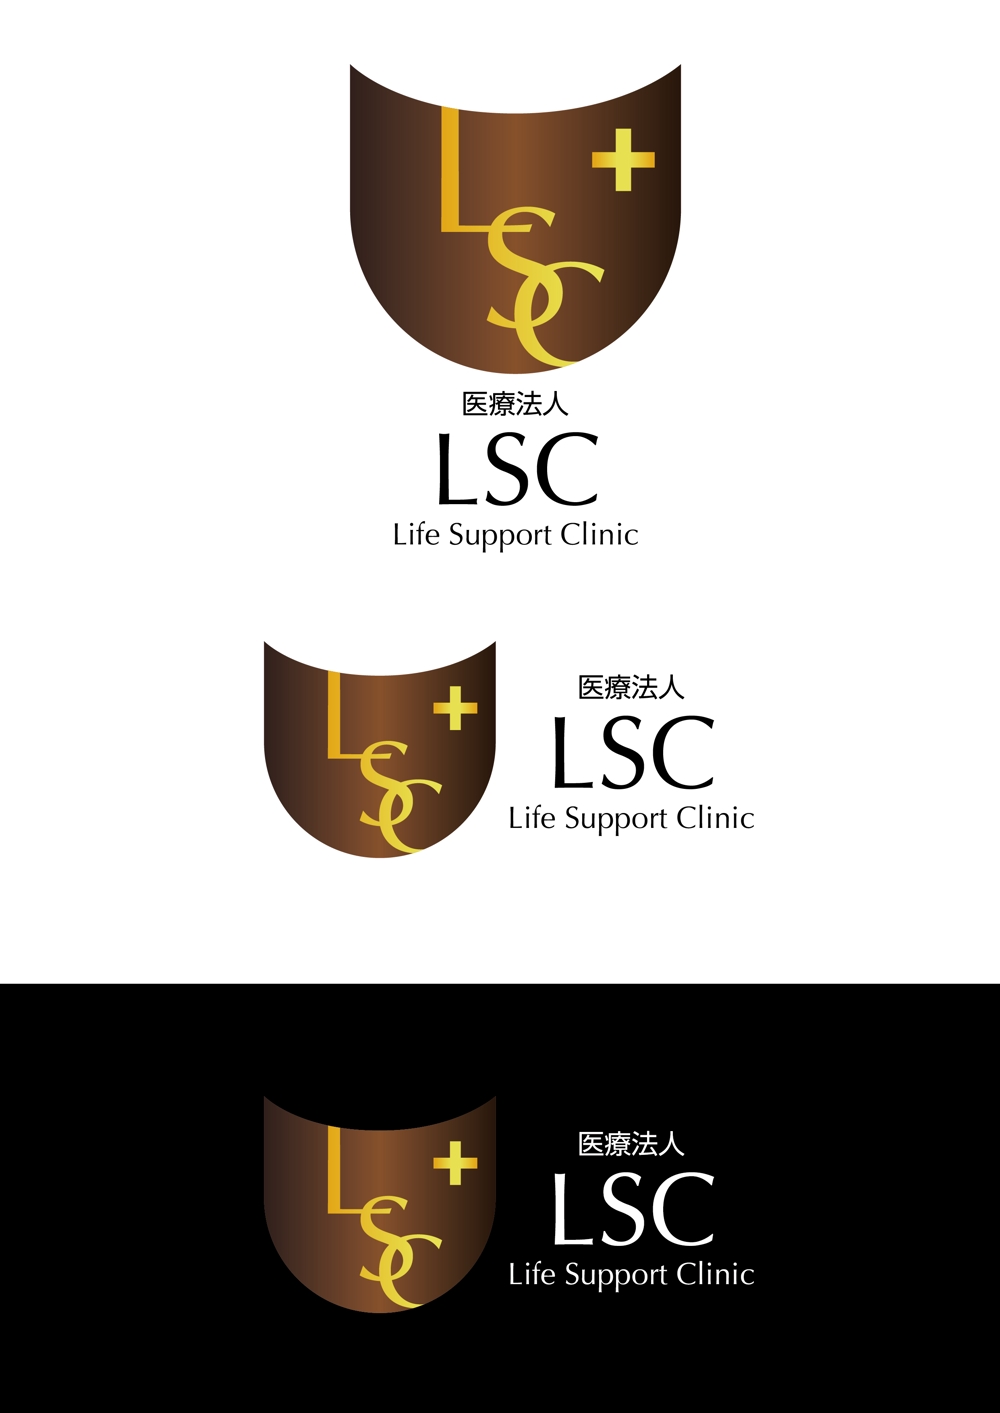 「LSC」のロゴ、医療法人LSCのロゴを作成お願いします。